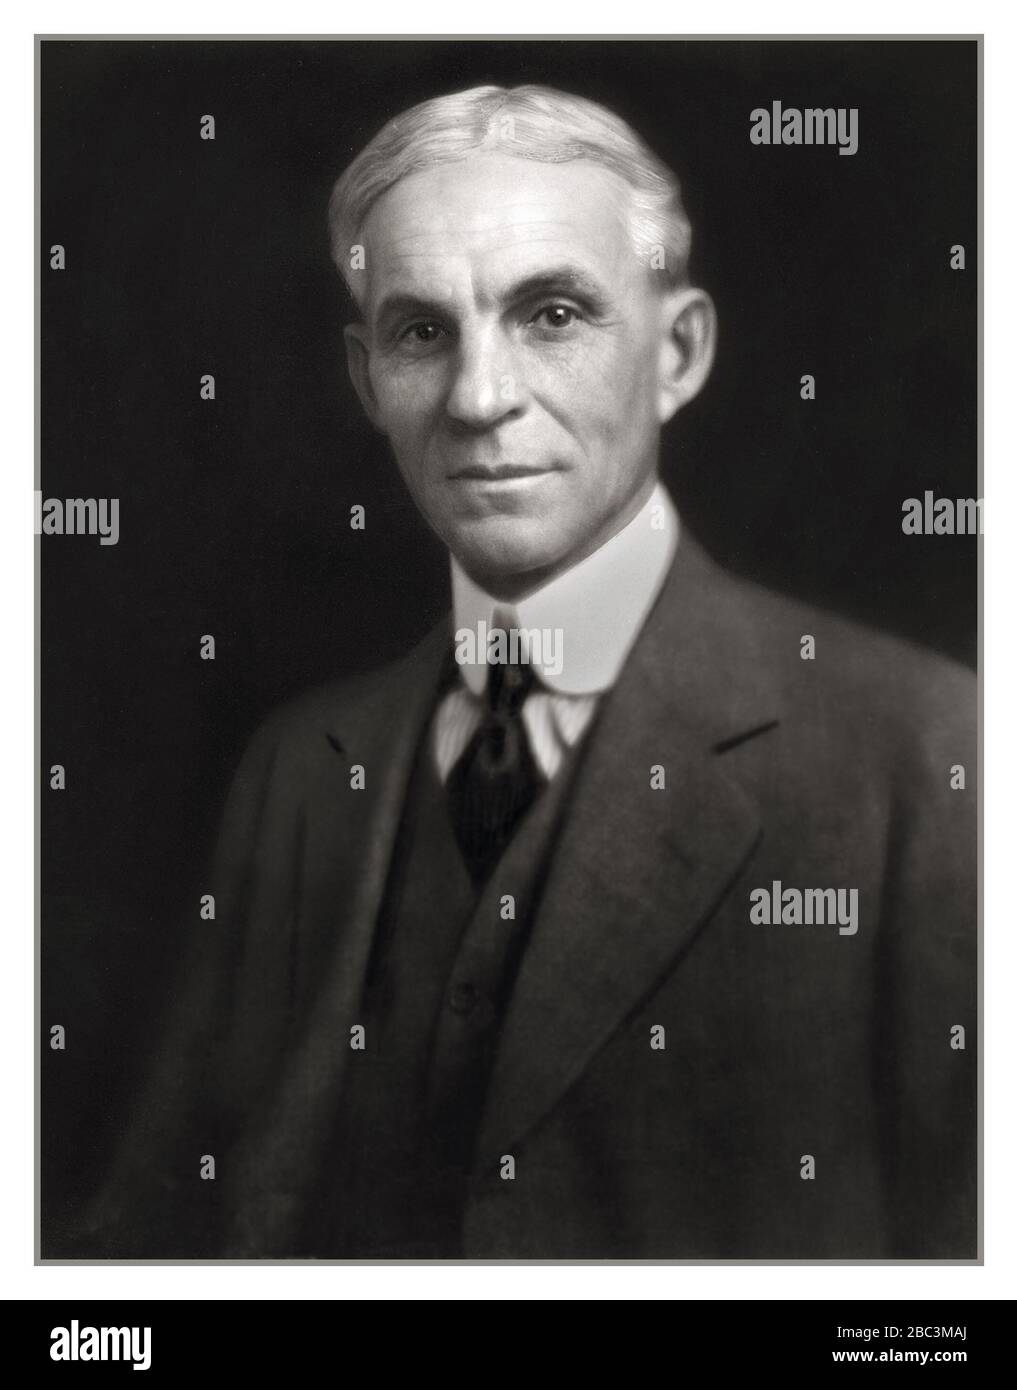 Henry Ford,1900's elegante retrato formal del estudio, fundador, benefactor industrialista y visionario de la compañía americana del motor del Ford Inc. Henry Ford retrato bajo de la llave negro del fondo de EE.UU. América Foto de stock